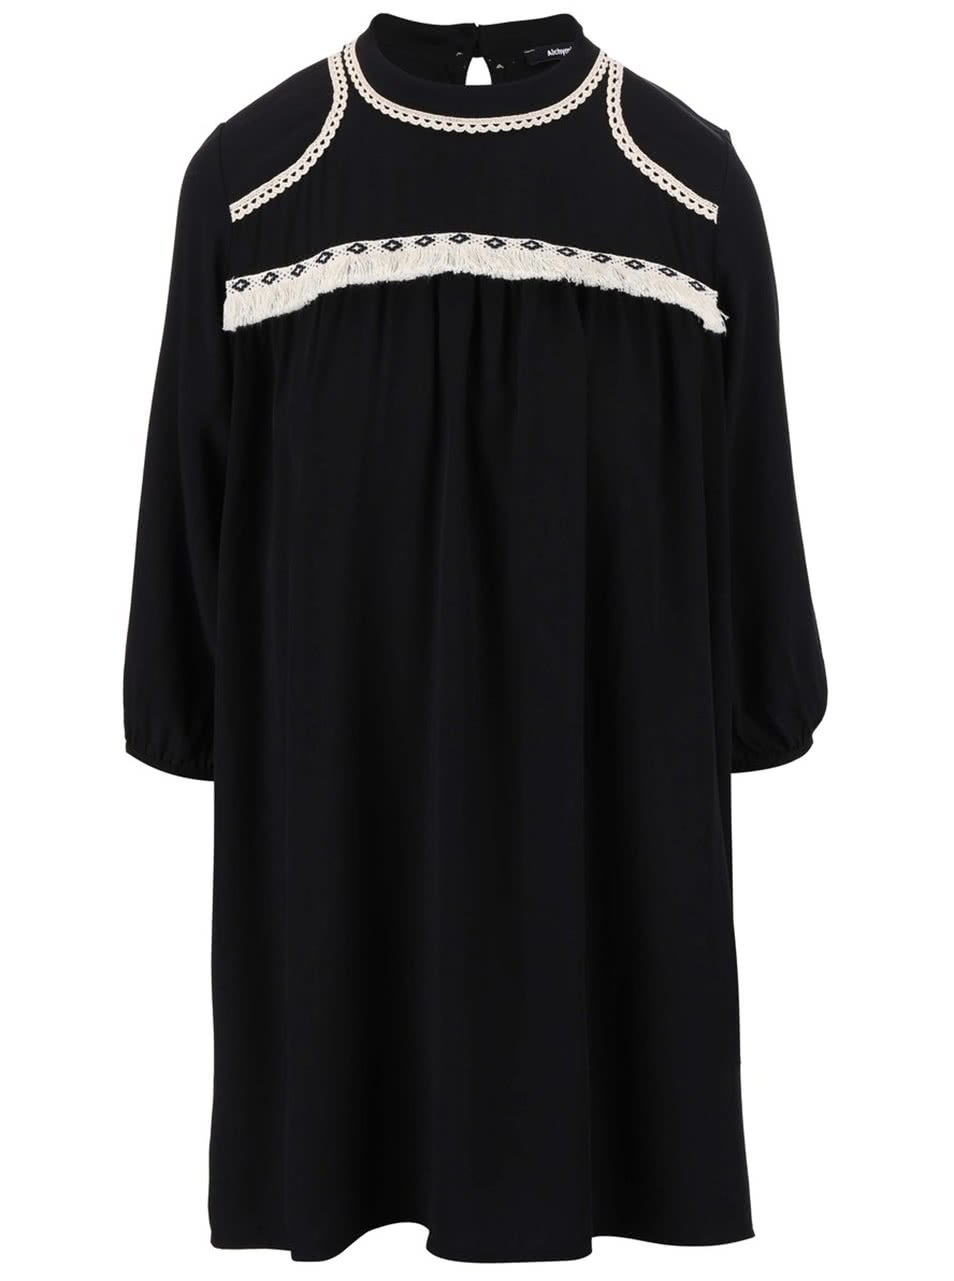 Černé šaty s krémovými detaily Alchymi Morion